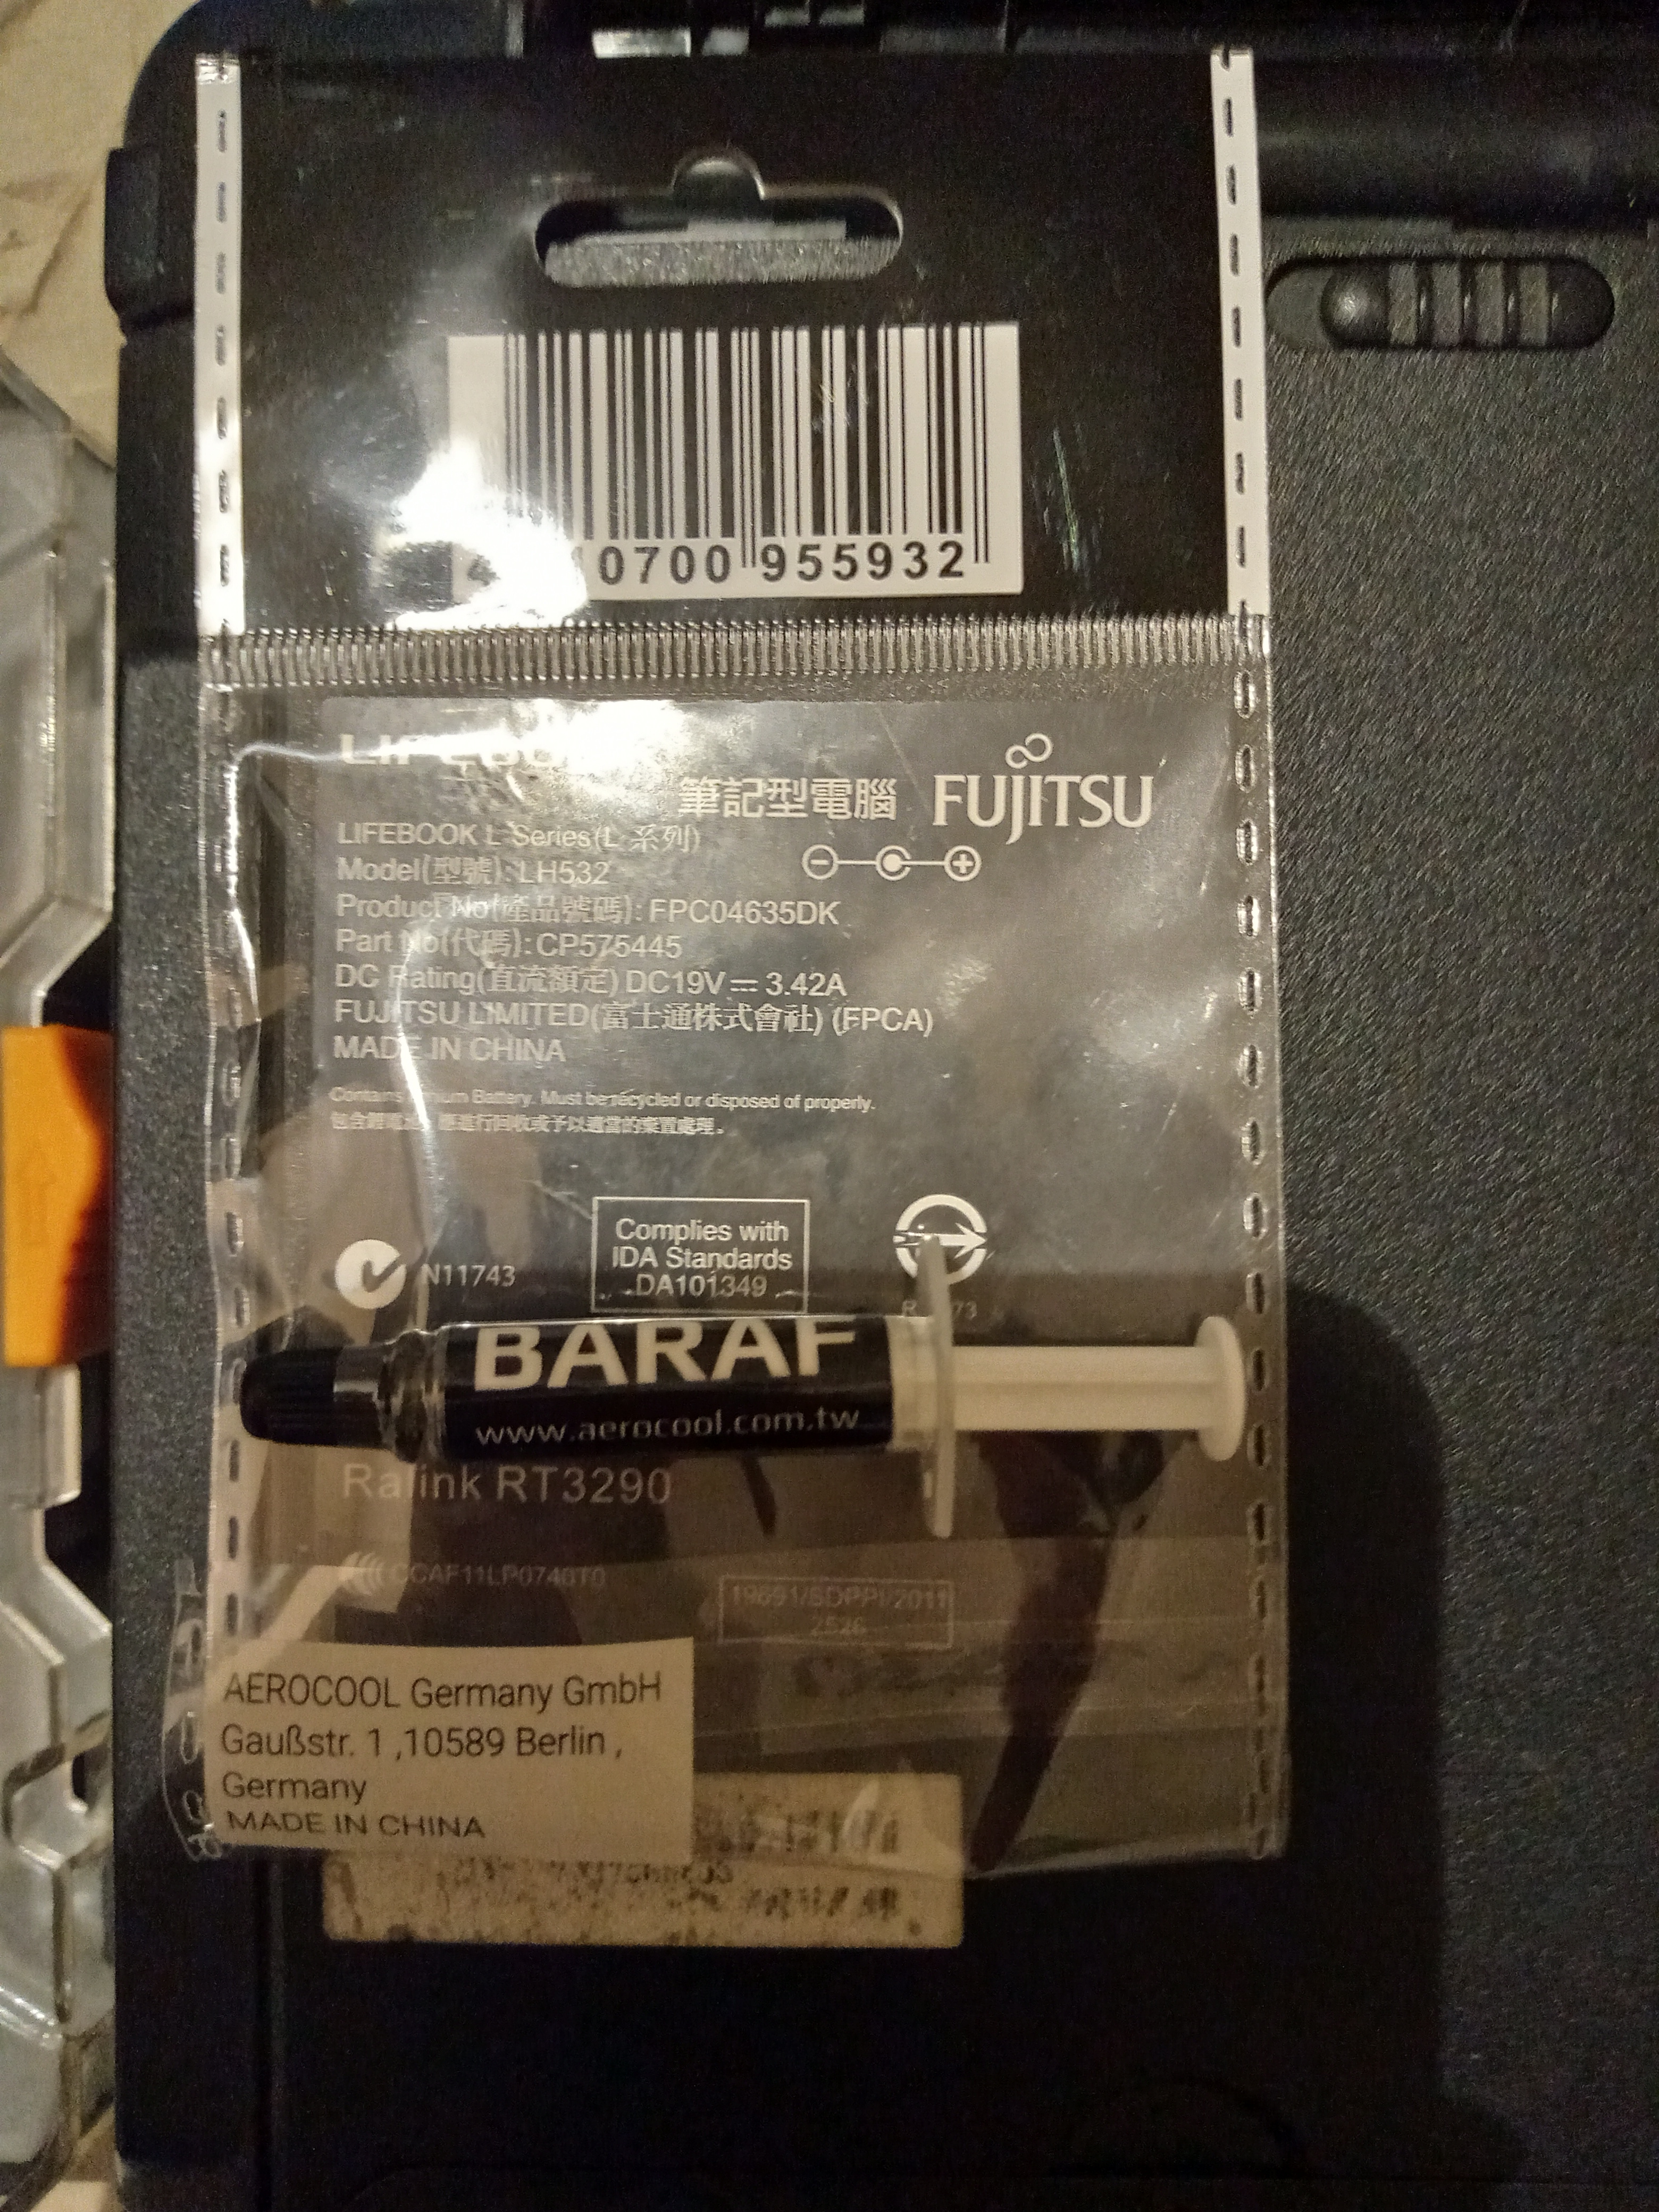 Baraf Aerocool thermal paste